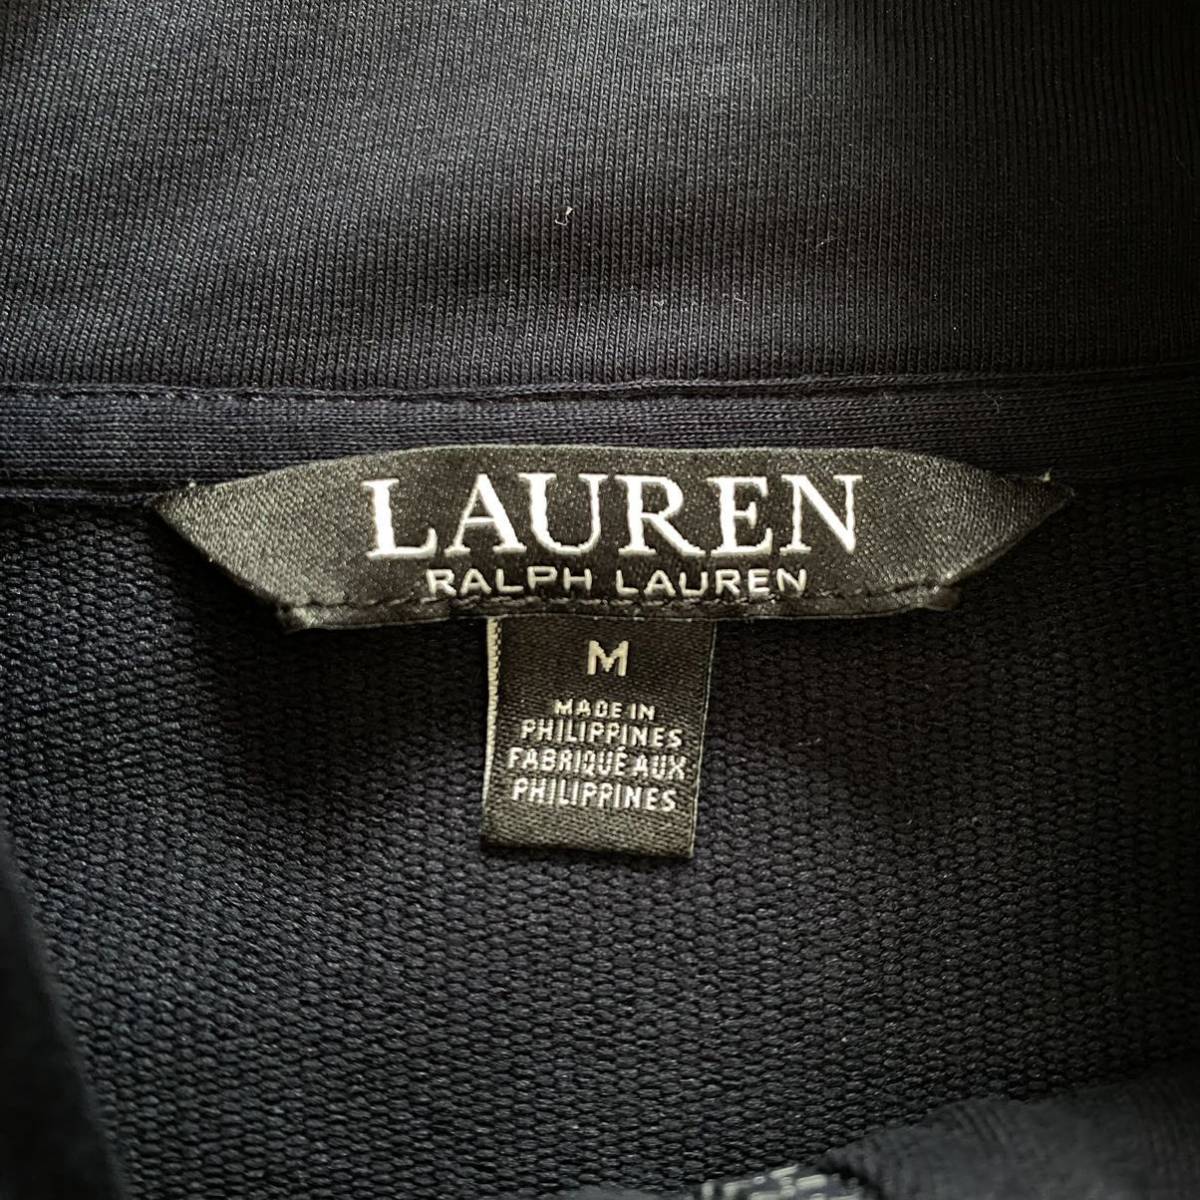 USA б/у одежда LAUREN RALPH LAUREN low Len Ralph Lauren джерси спортивная куртка женский M темный темно-синий America скупка S0694